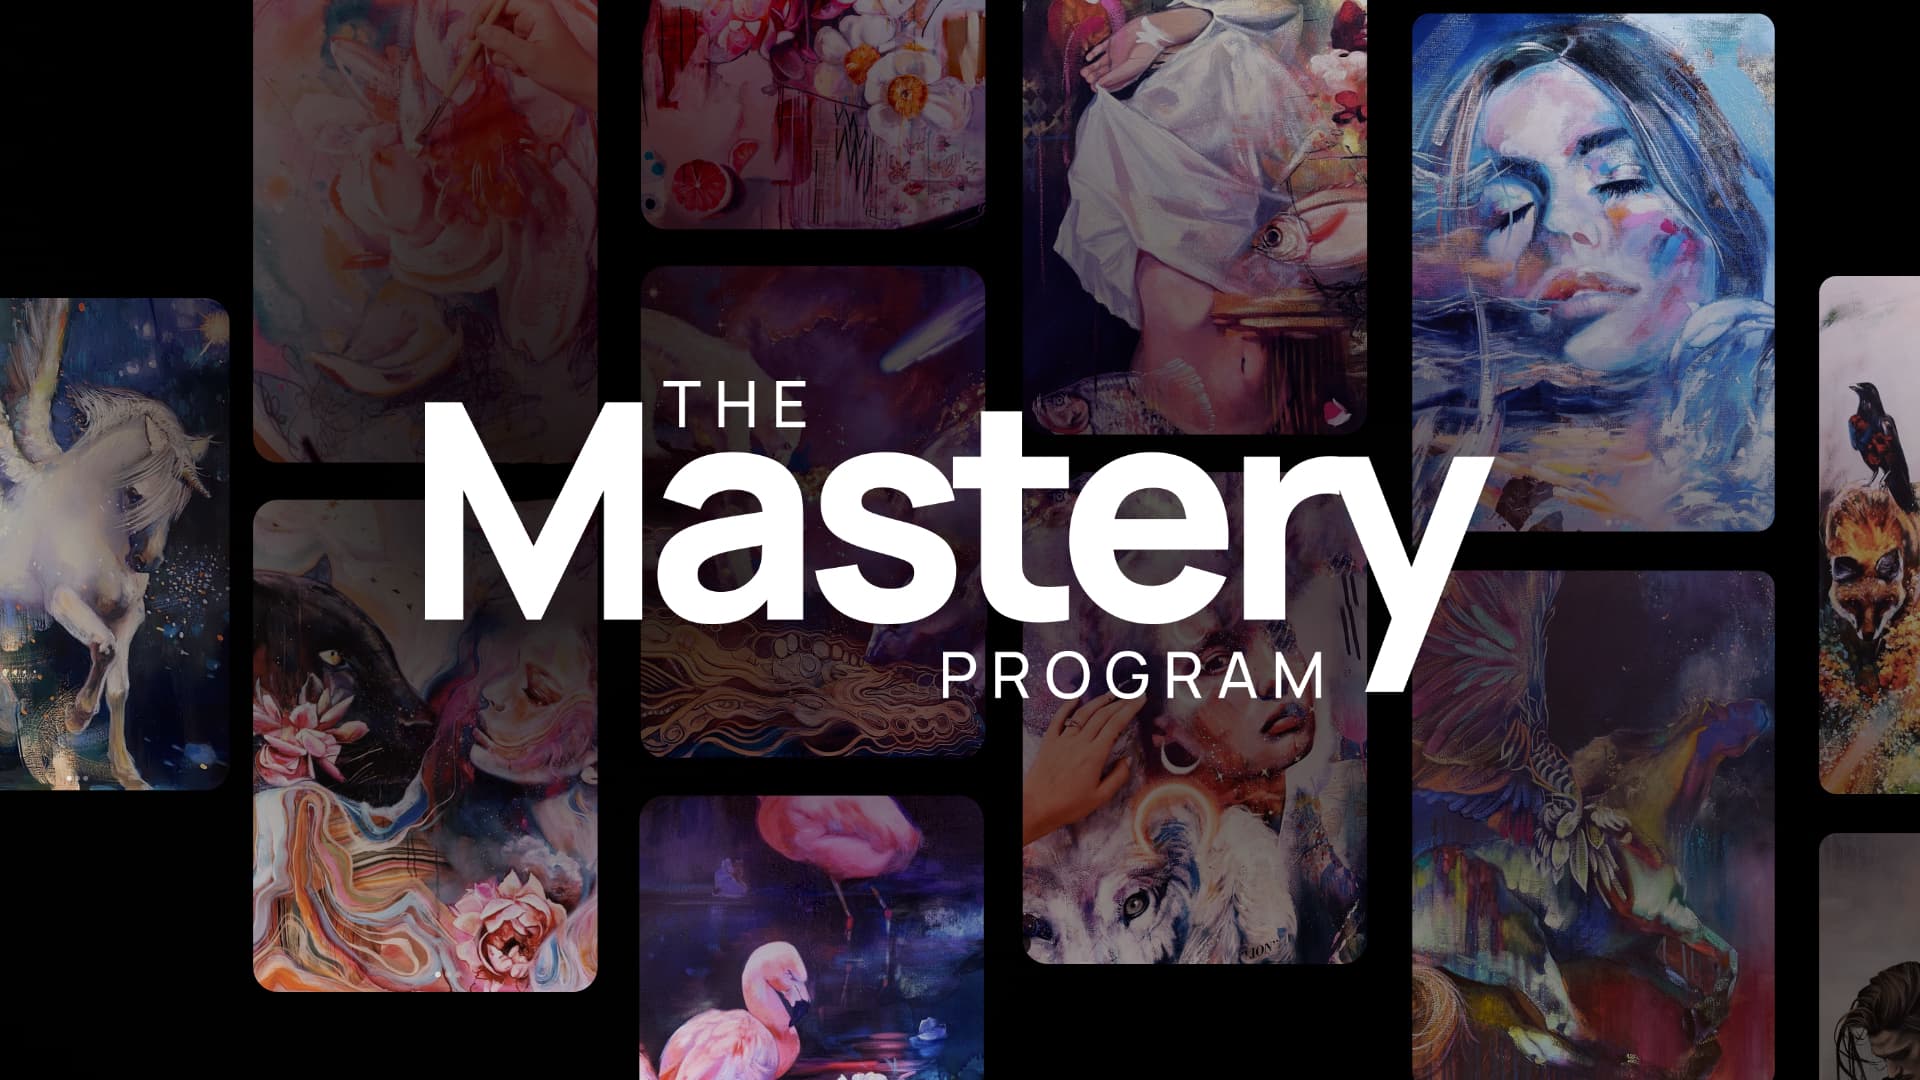 MILAN ART 'Mastery' Oil & Drawing Kit